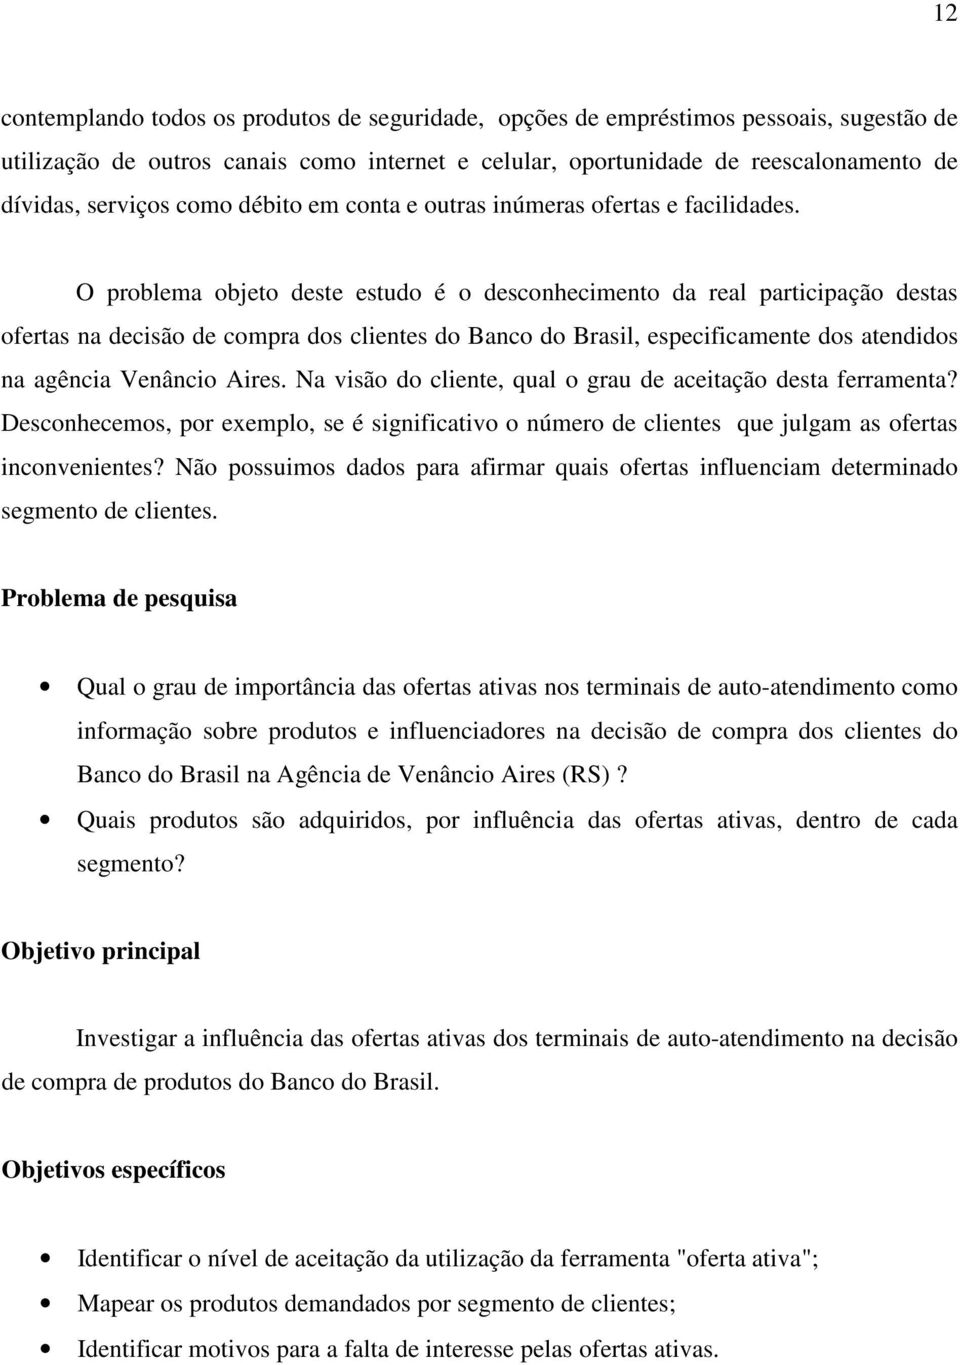 O problema objeto deste estudo é o desconhecimento da real participação destas ofertas na decisão de compra dos clientes do Banco do Brasil, especificamente dos atendidos na agência Venâncio Aires.